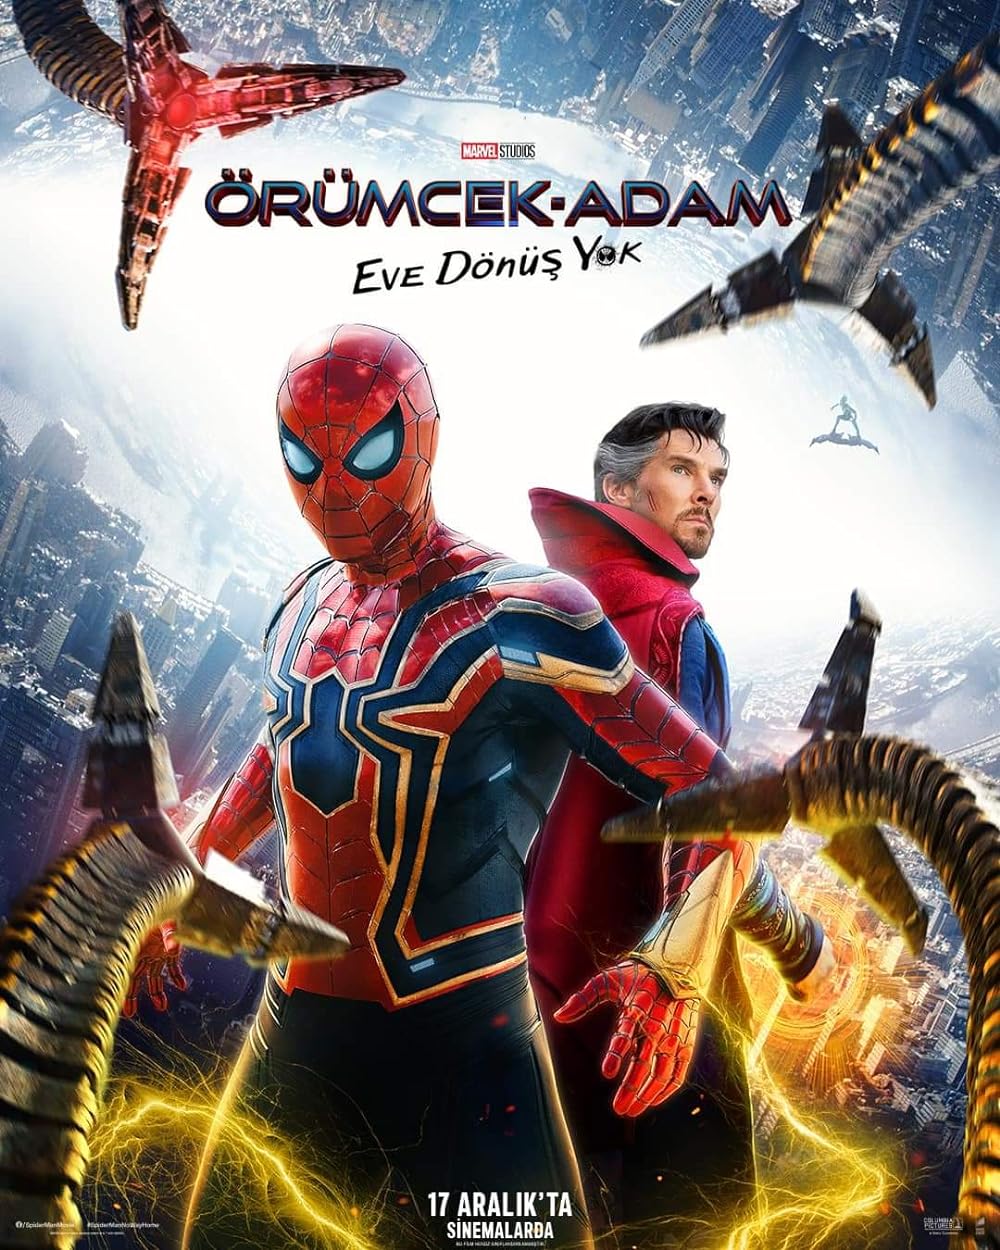 Spider-Man: No Way Home (2021) 448Kbps 23.976Fps 48Khz 5.1Ch BluRay Turkish Audio TAC